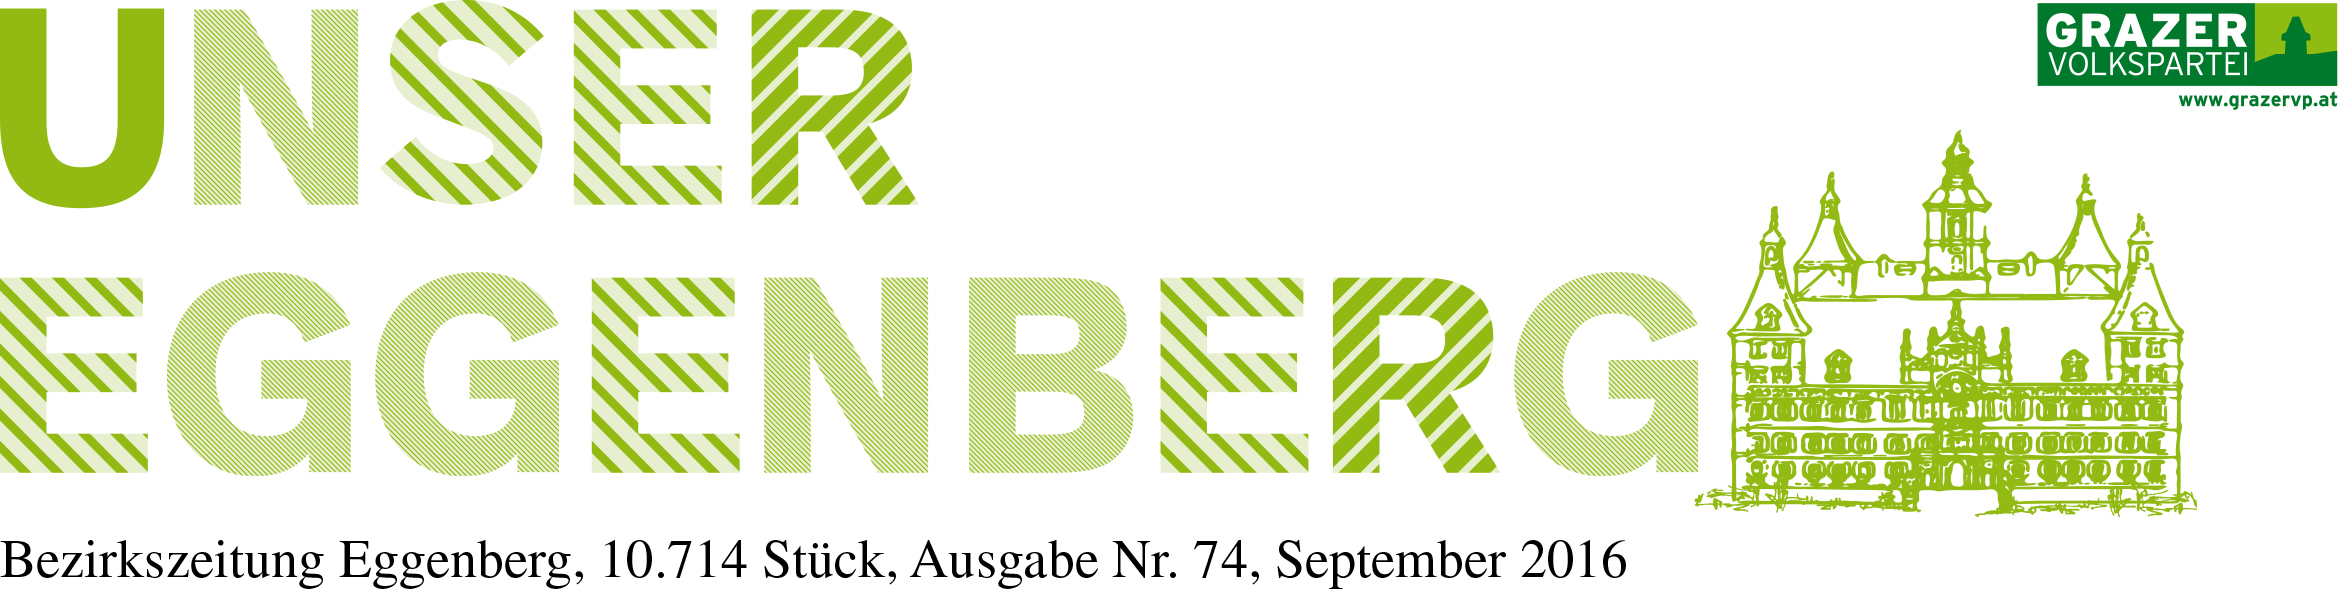 Unser Eggenberg Logo